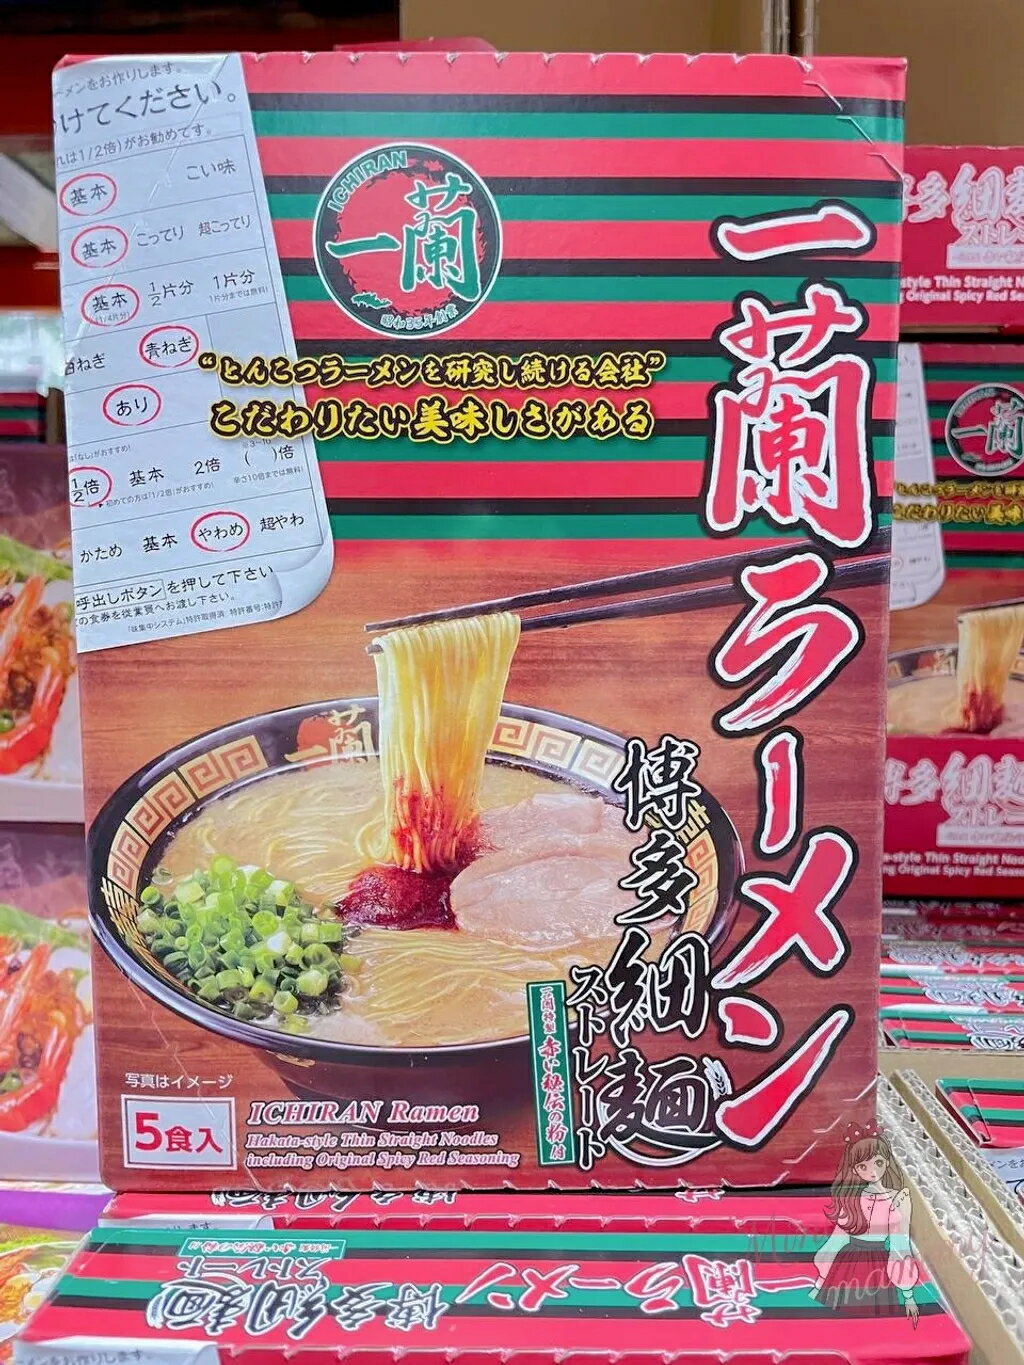 【現貨】一蘭拉麵 即時拉麵 5人份 日本好事多 日本costco 代購